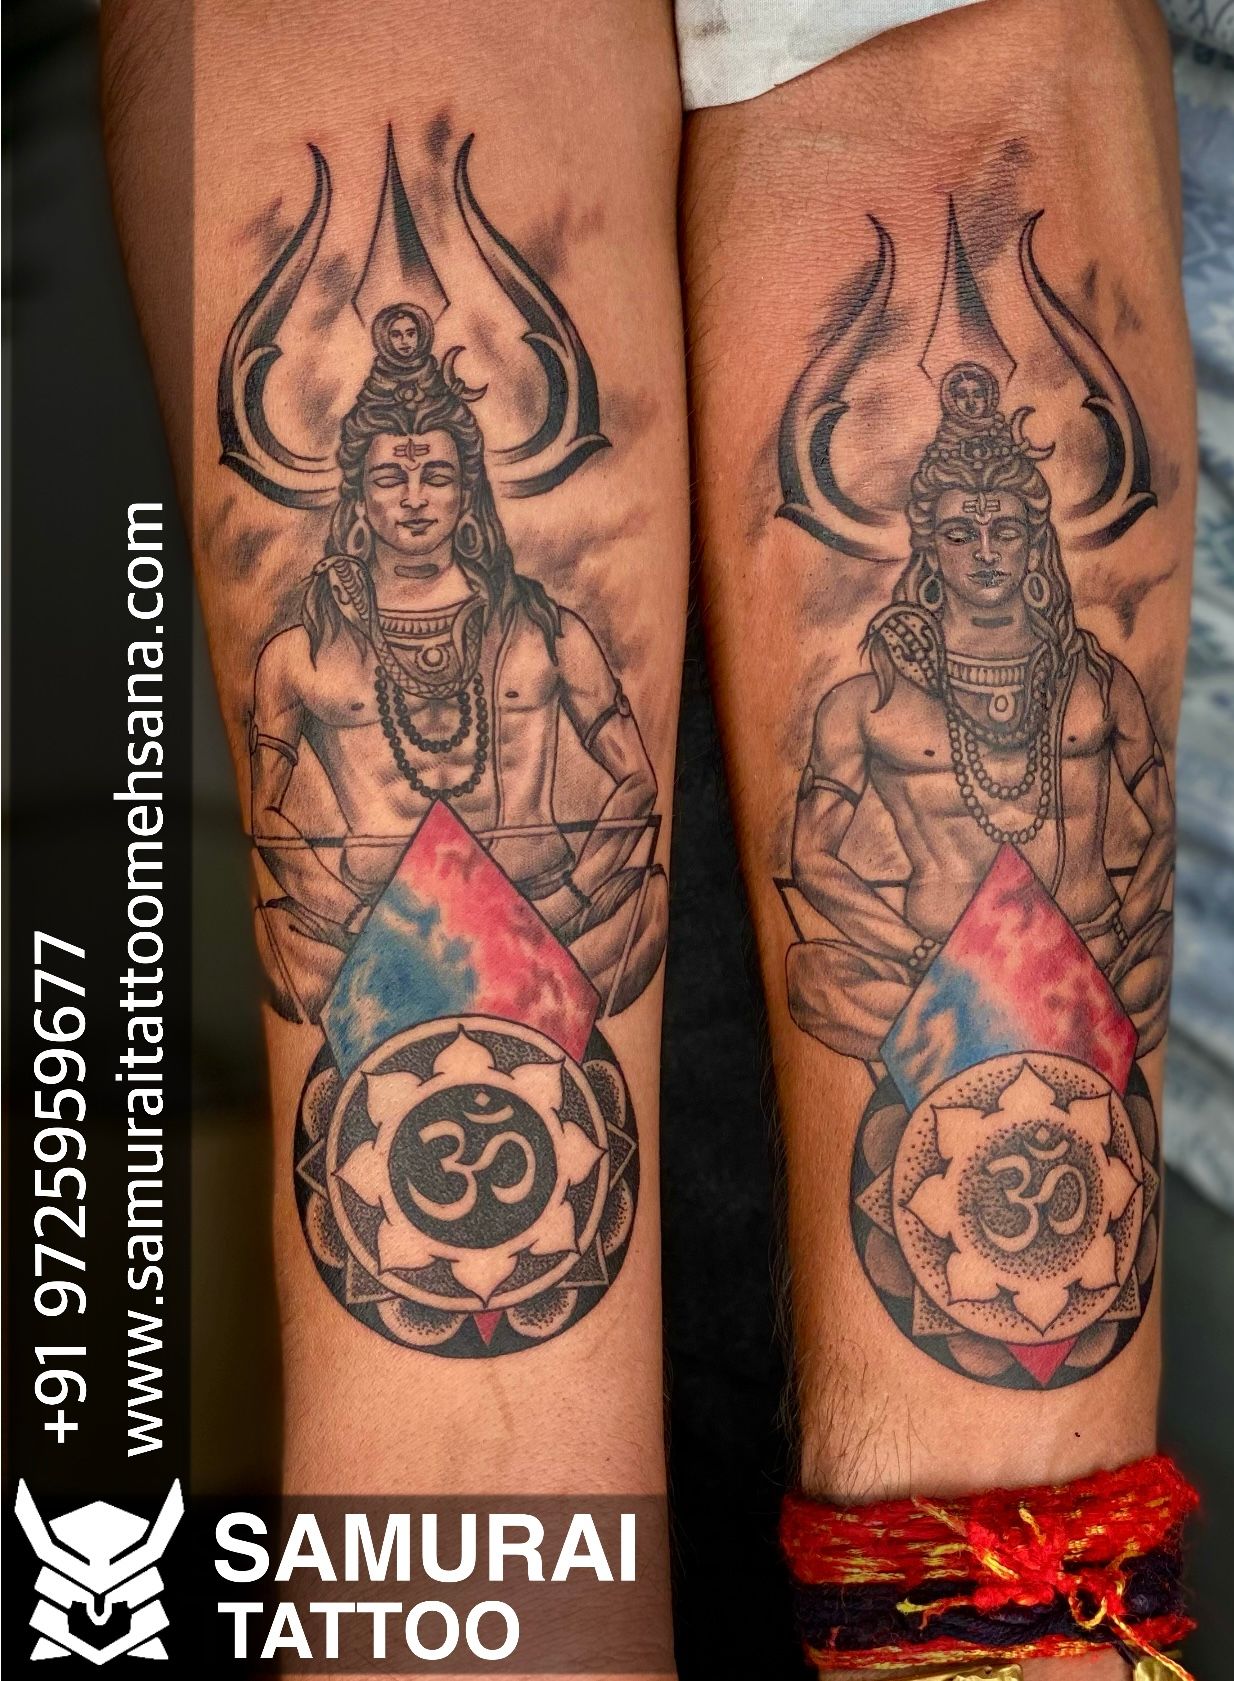 Lord Shiva Tattoos for Spiritual Enlightenment - Kingleo Tattooz - Kingleo  Tattooz